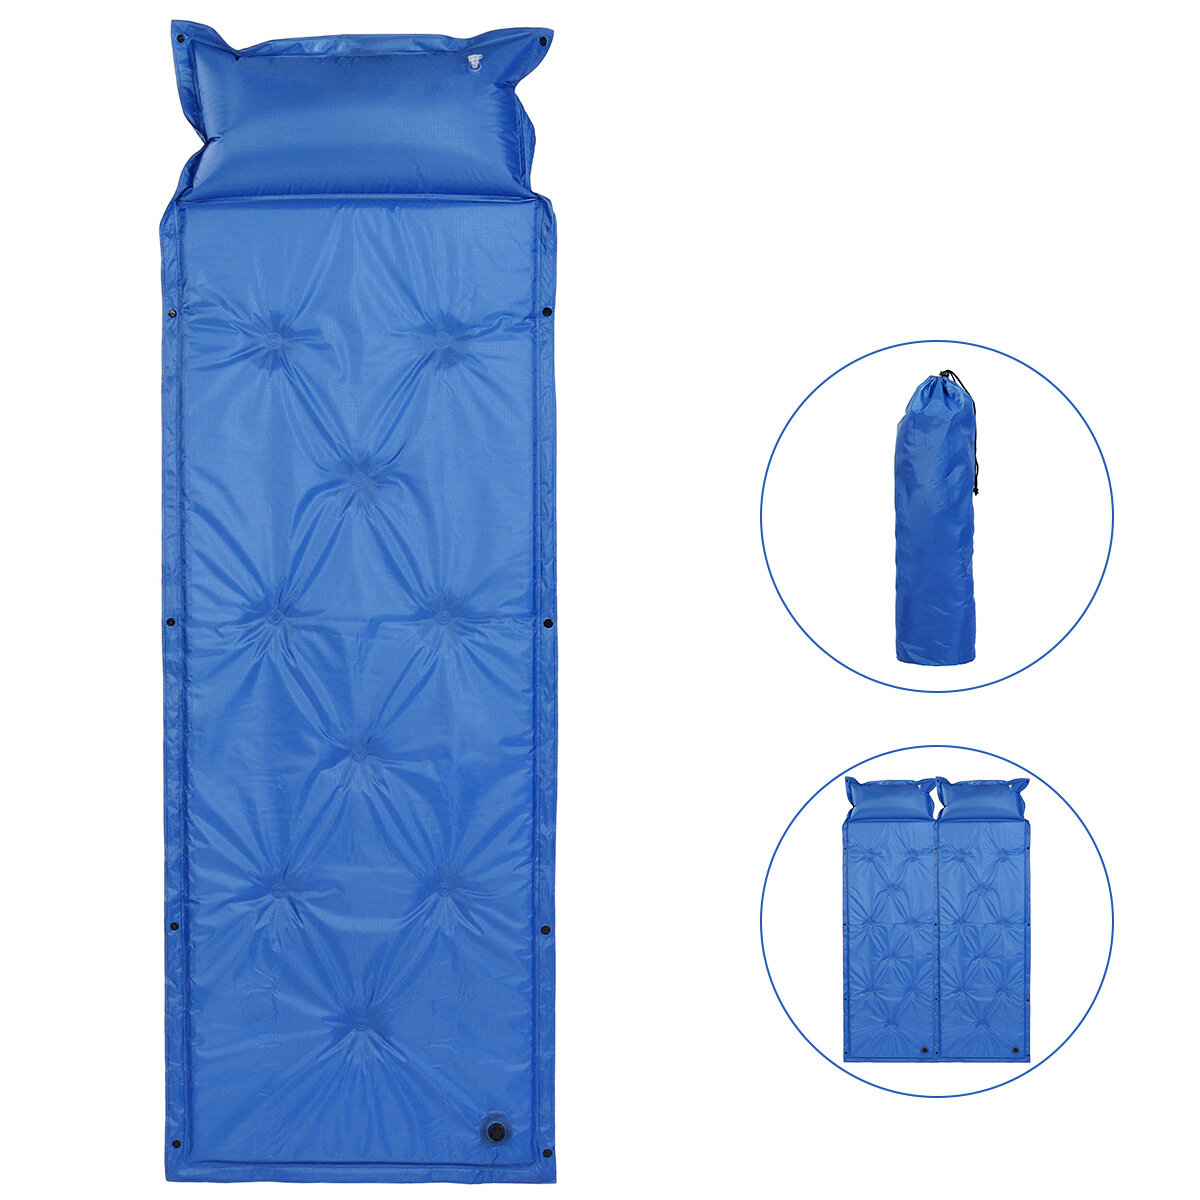 Colchão inflável autoinflável para dormir, colchonete para dormir, cama de ar para acampamento, caminhada, tapete de dormir individual unível para barraca